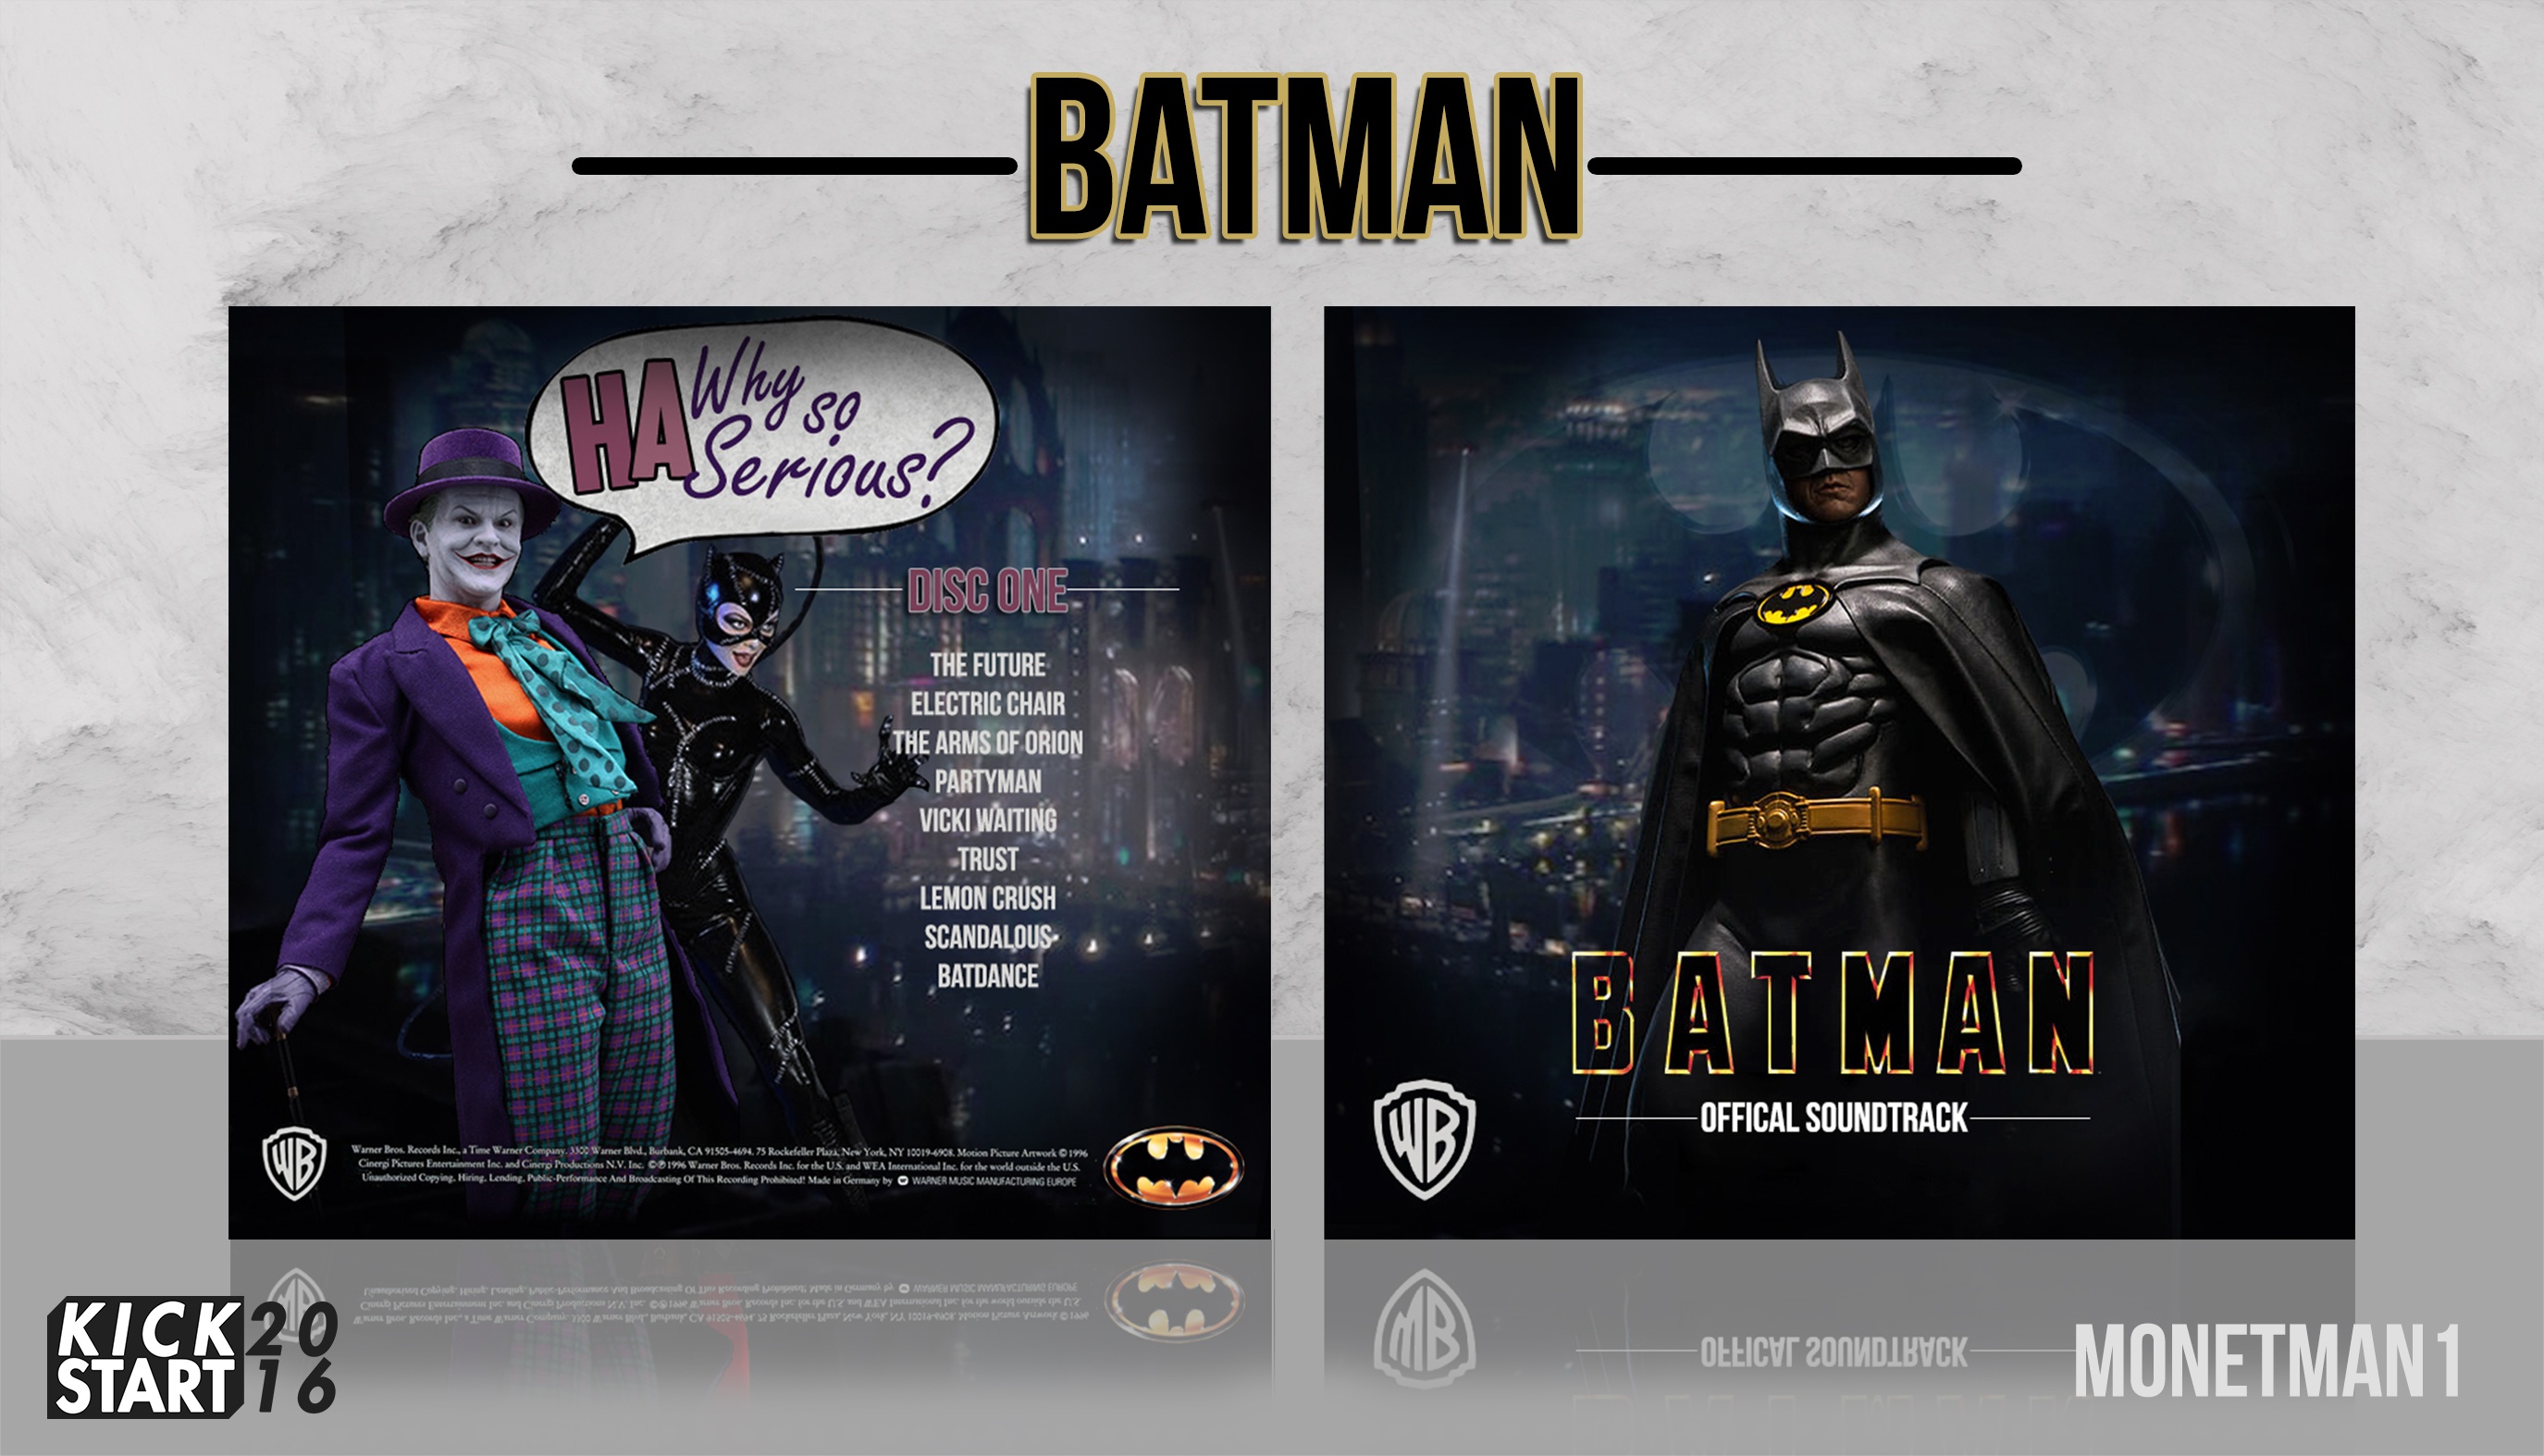 Batman Soundtrack box cover